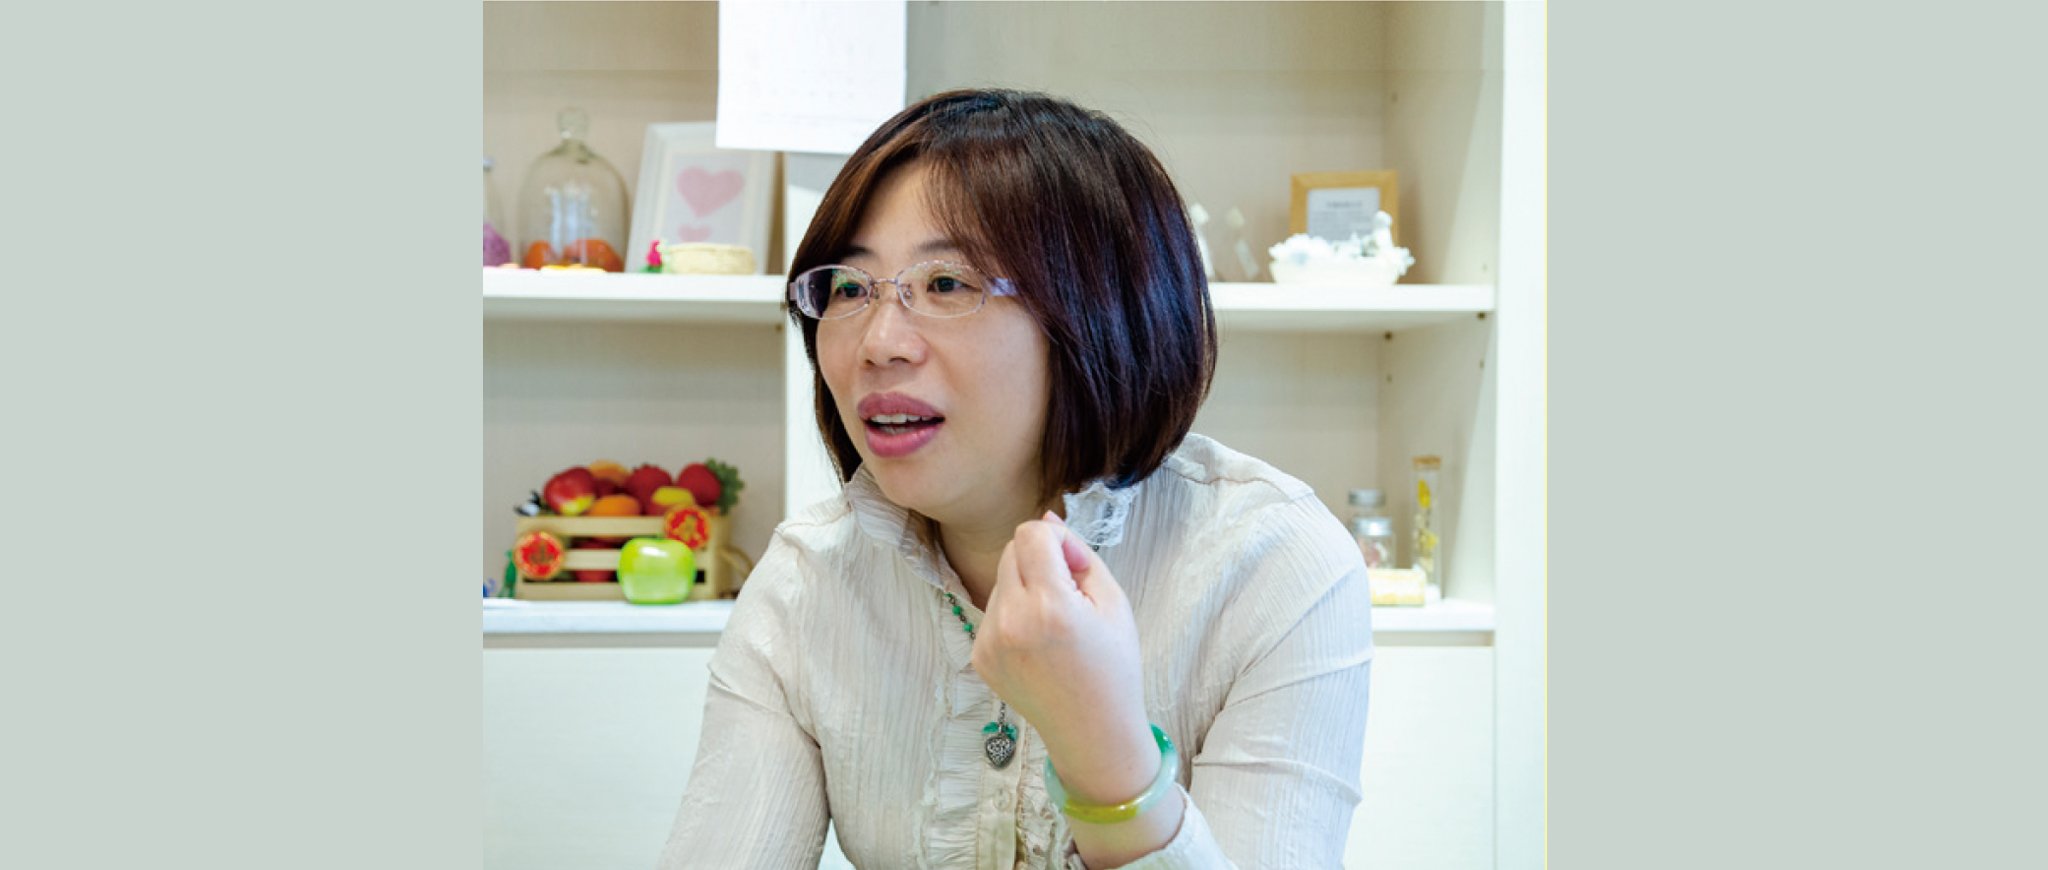 精油專家蕭秀琴分享她的精油日常。